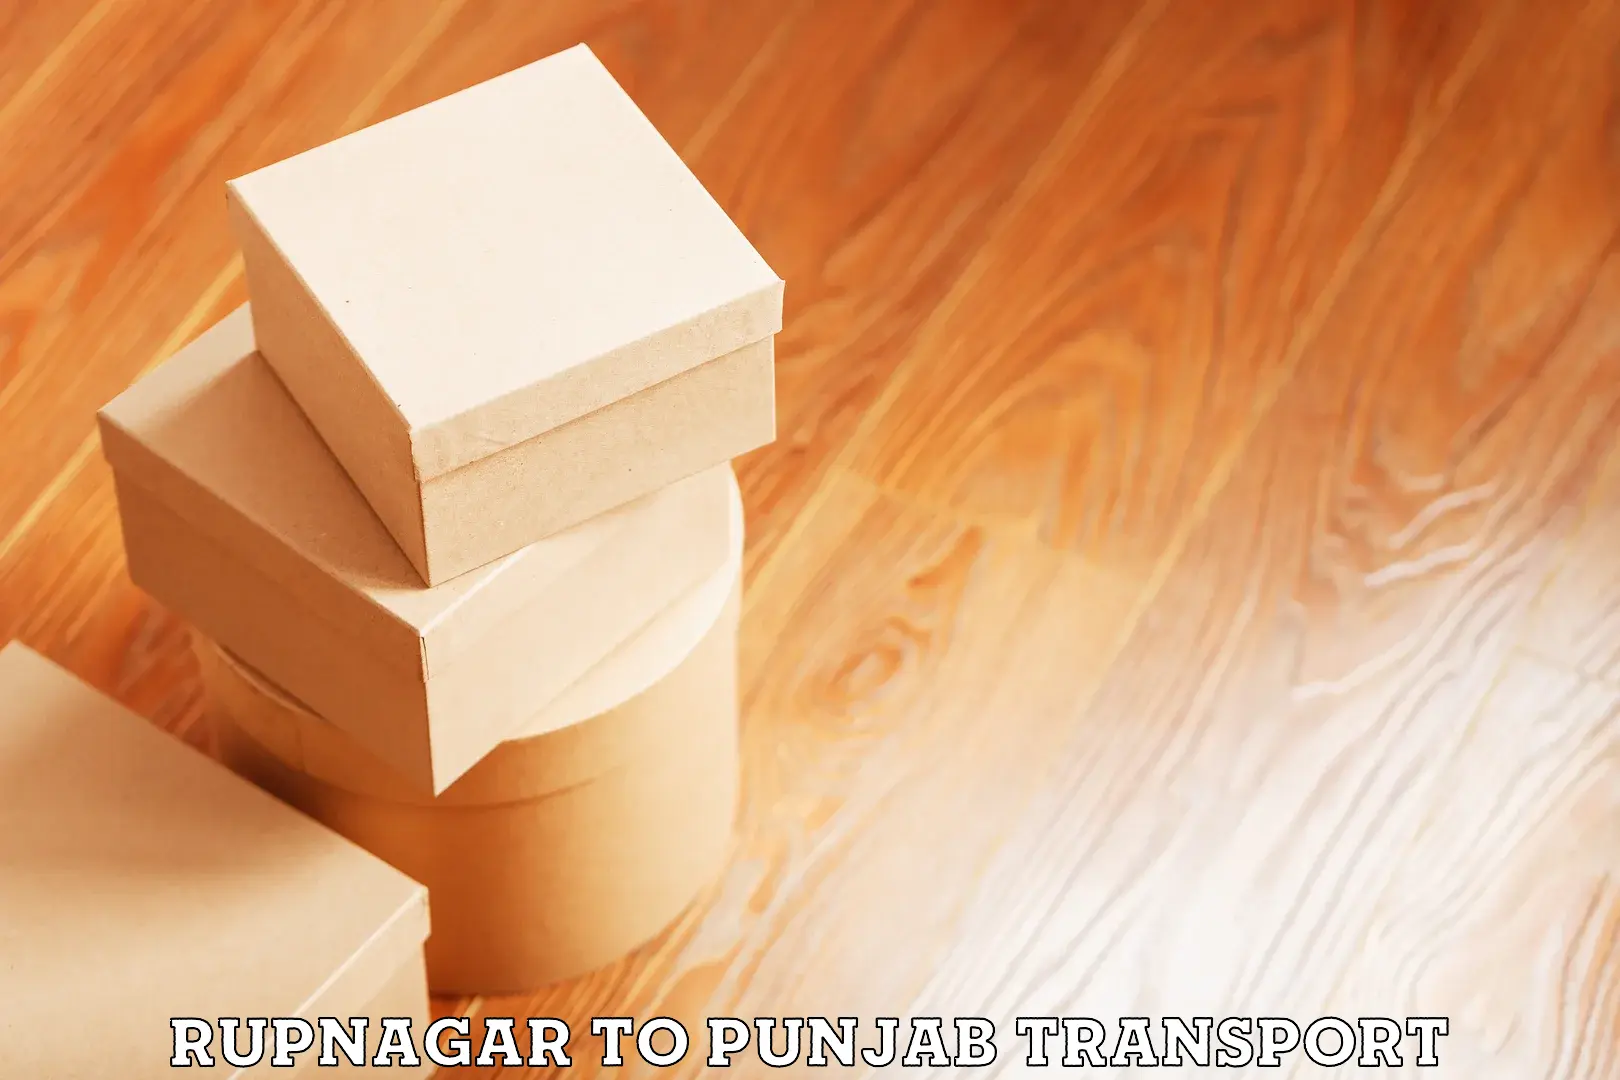 Air cargo transport services Rupnagar to Amritsar